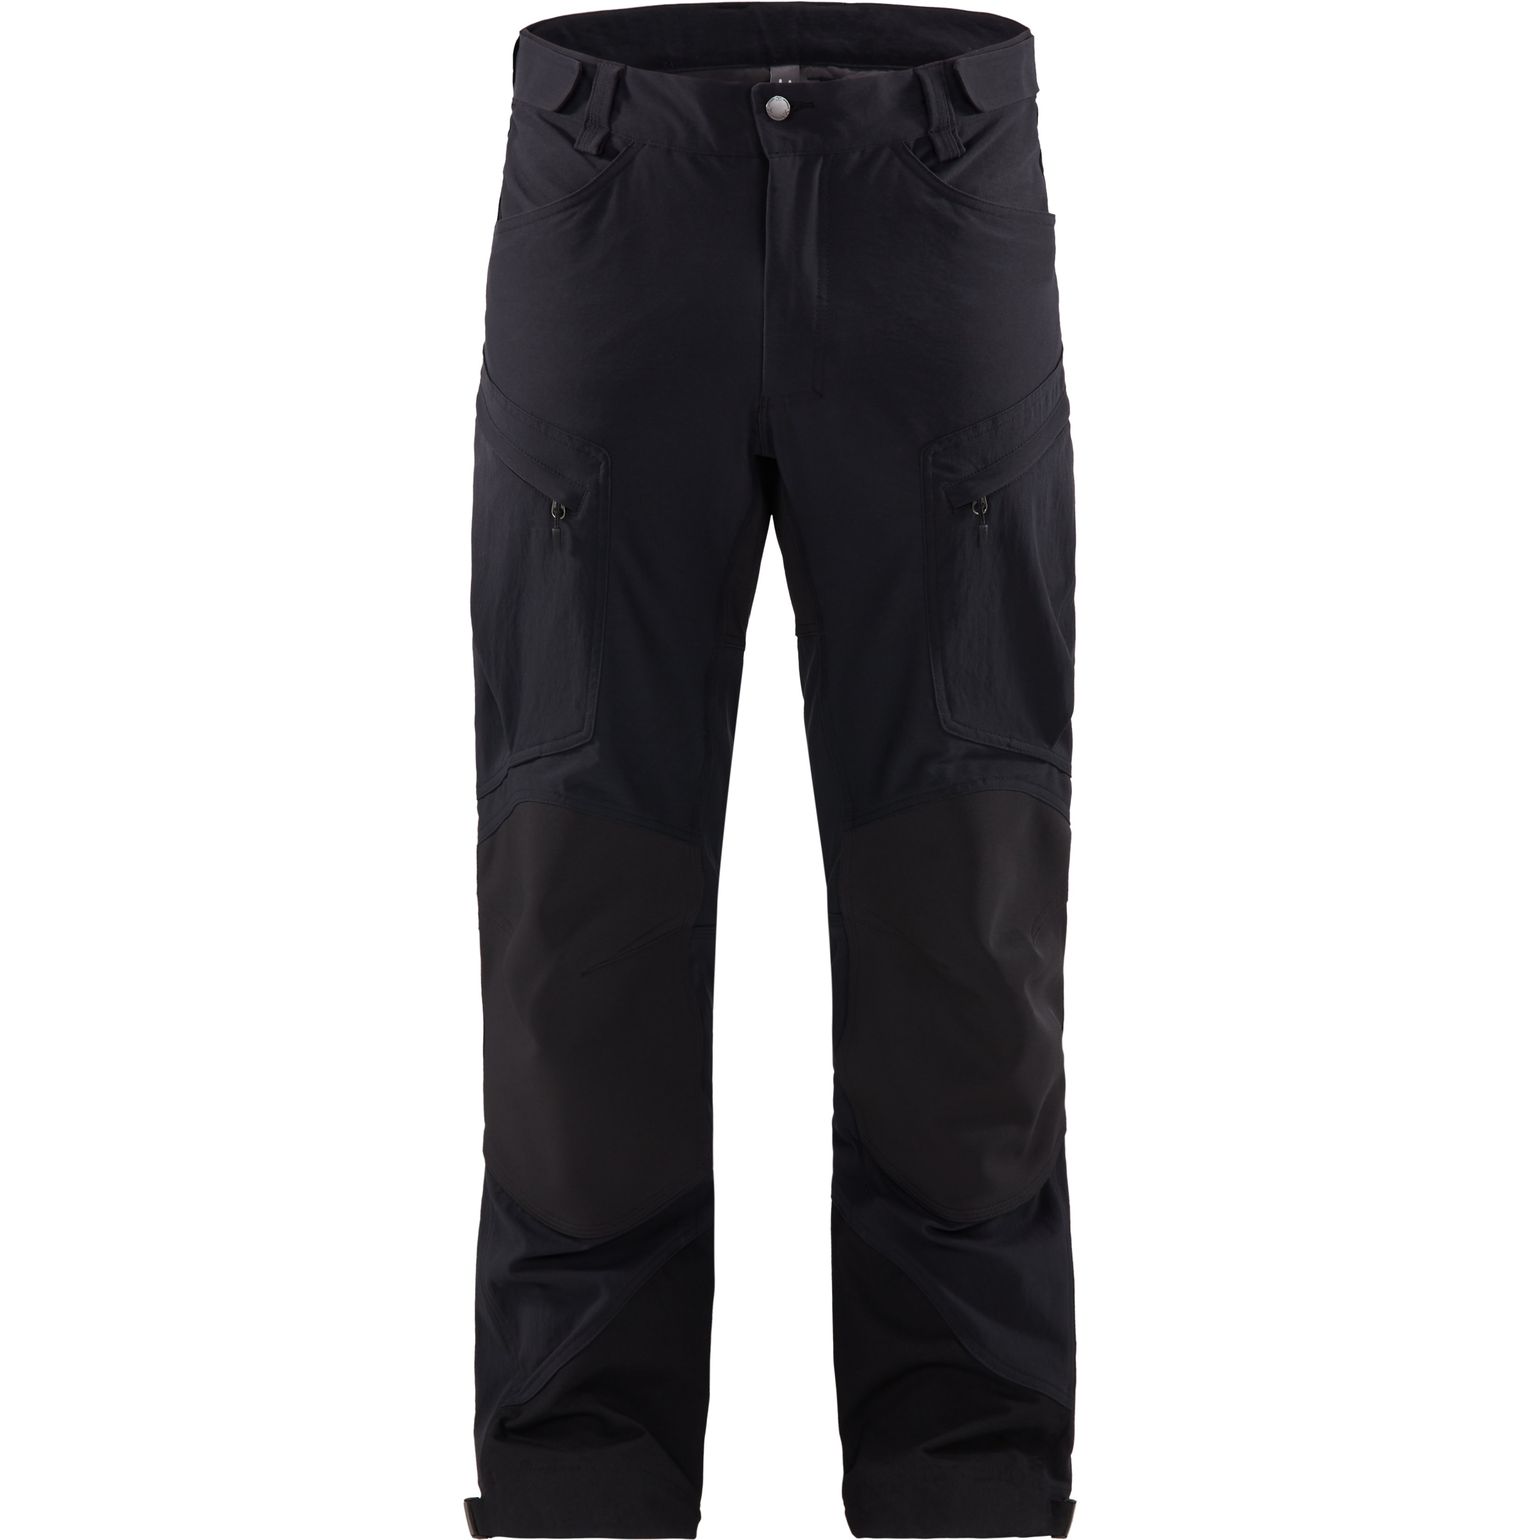 Haglöfs Men's Rugged Mountain Pant True Black Solid Short